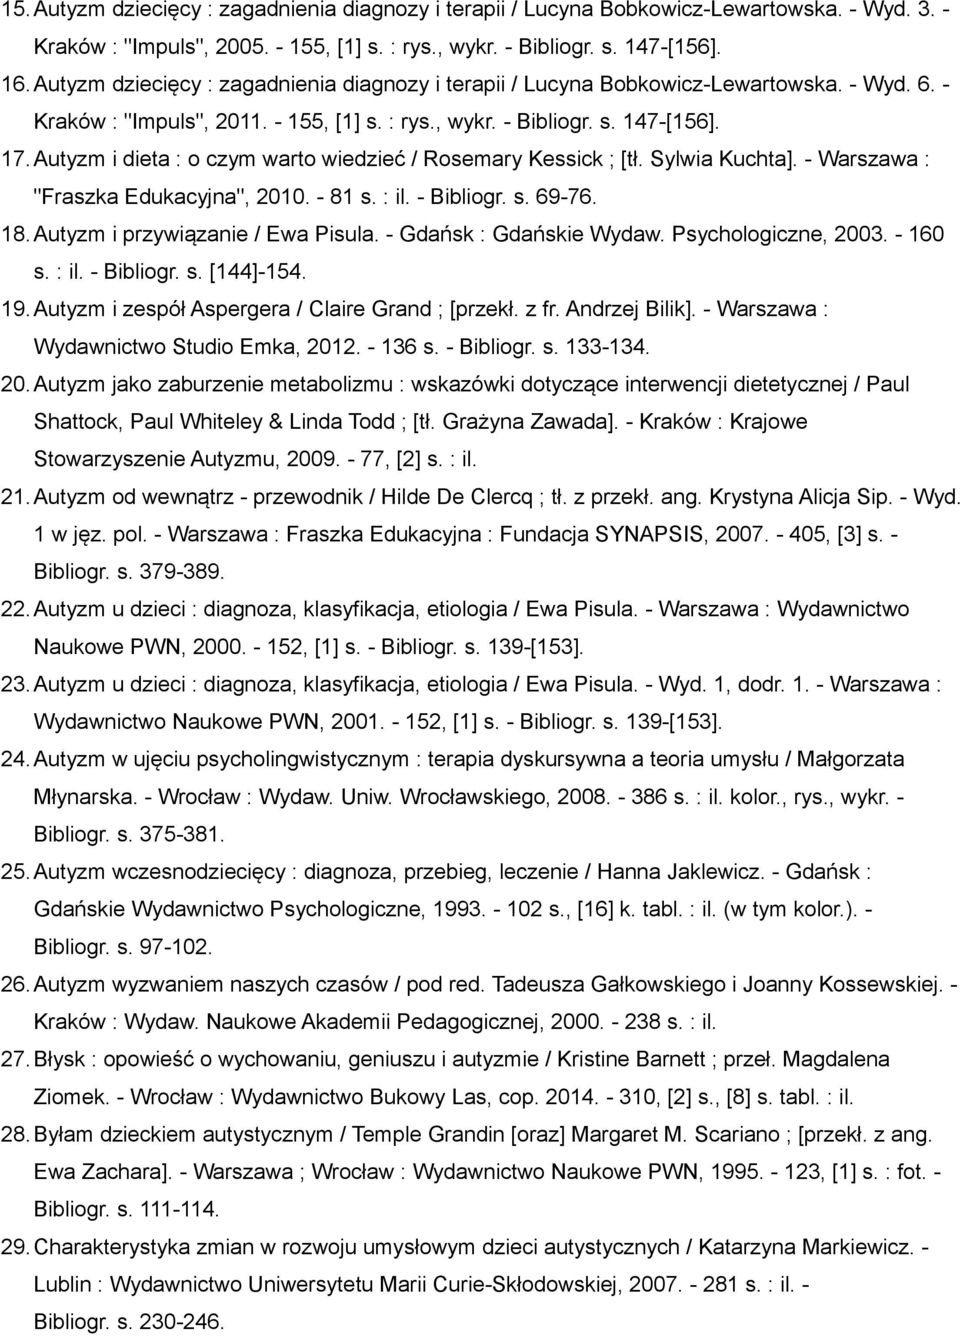 Autyzm i dieta : o czym warto wiedzieć / Rosemary Kessick ; [tł. Sylwia Kuchta]. - Warszawa : "Fraszka Edukacyjna", 2010. - 81 s. : il. - Bibliogr. s. 69-76. 18.Autyzm i przywiązanie / Ewa Pisula.